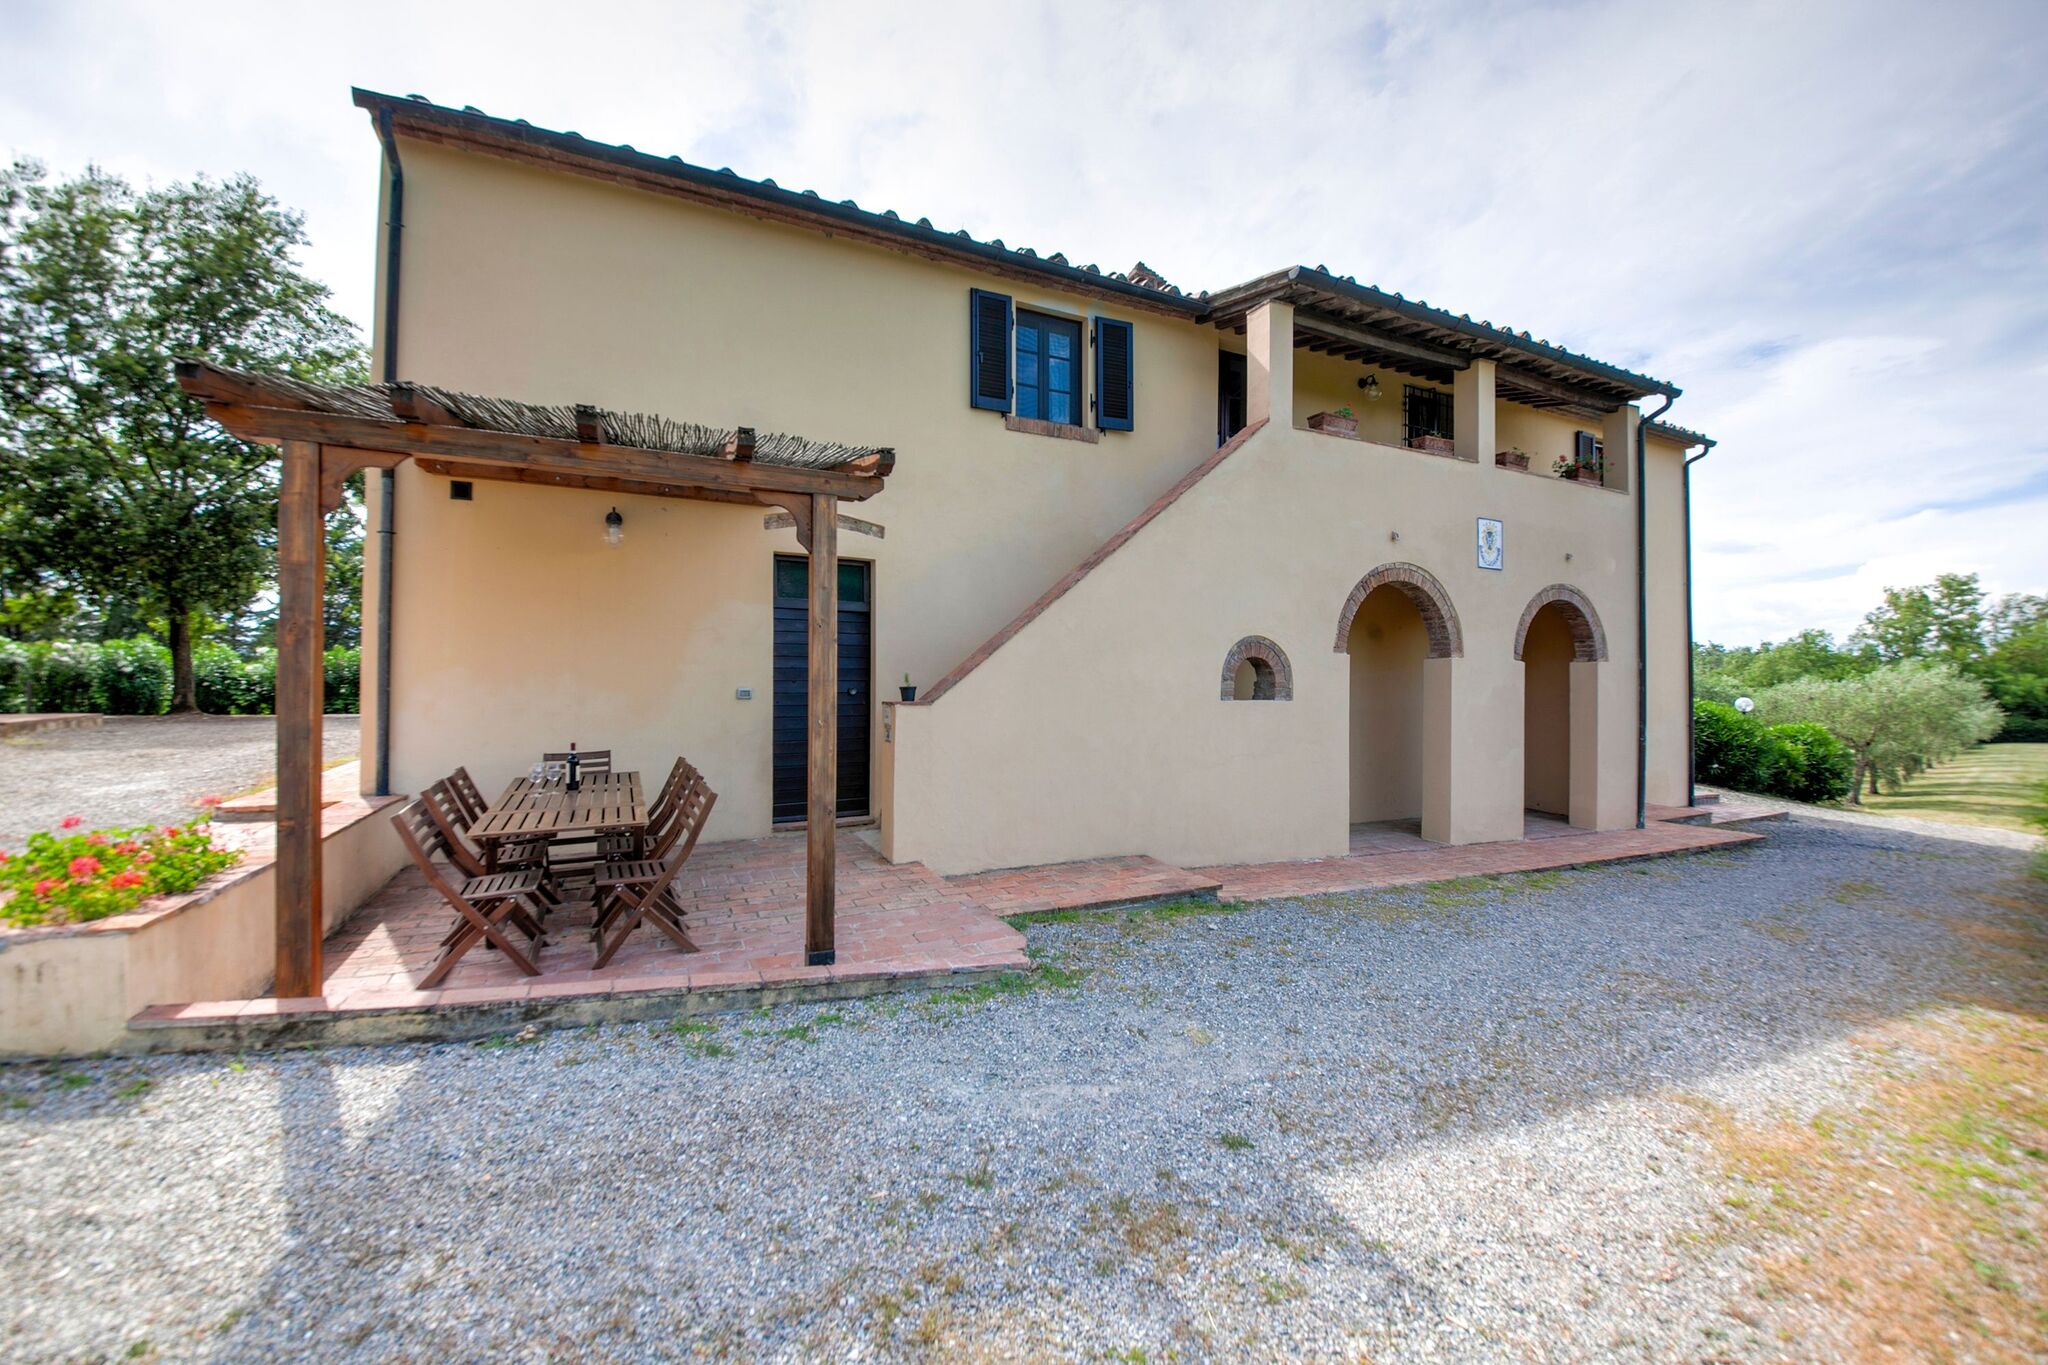 Een klein dorp van vijf mooie appartementen in de groene heuvels van Toscane